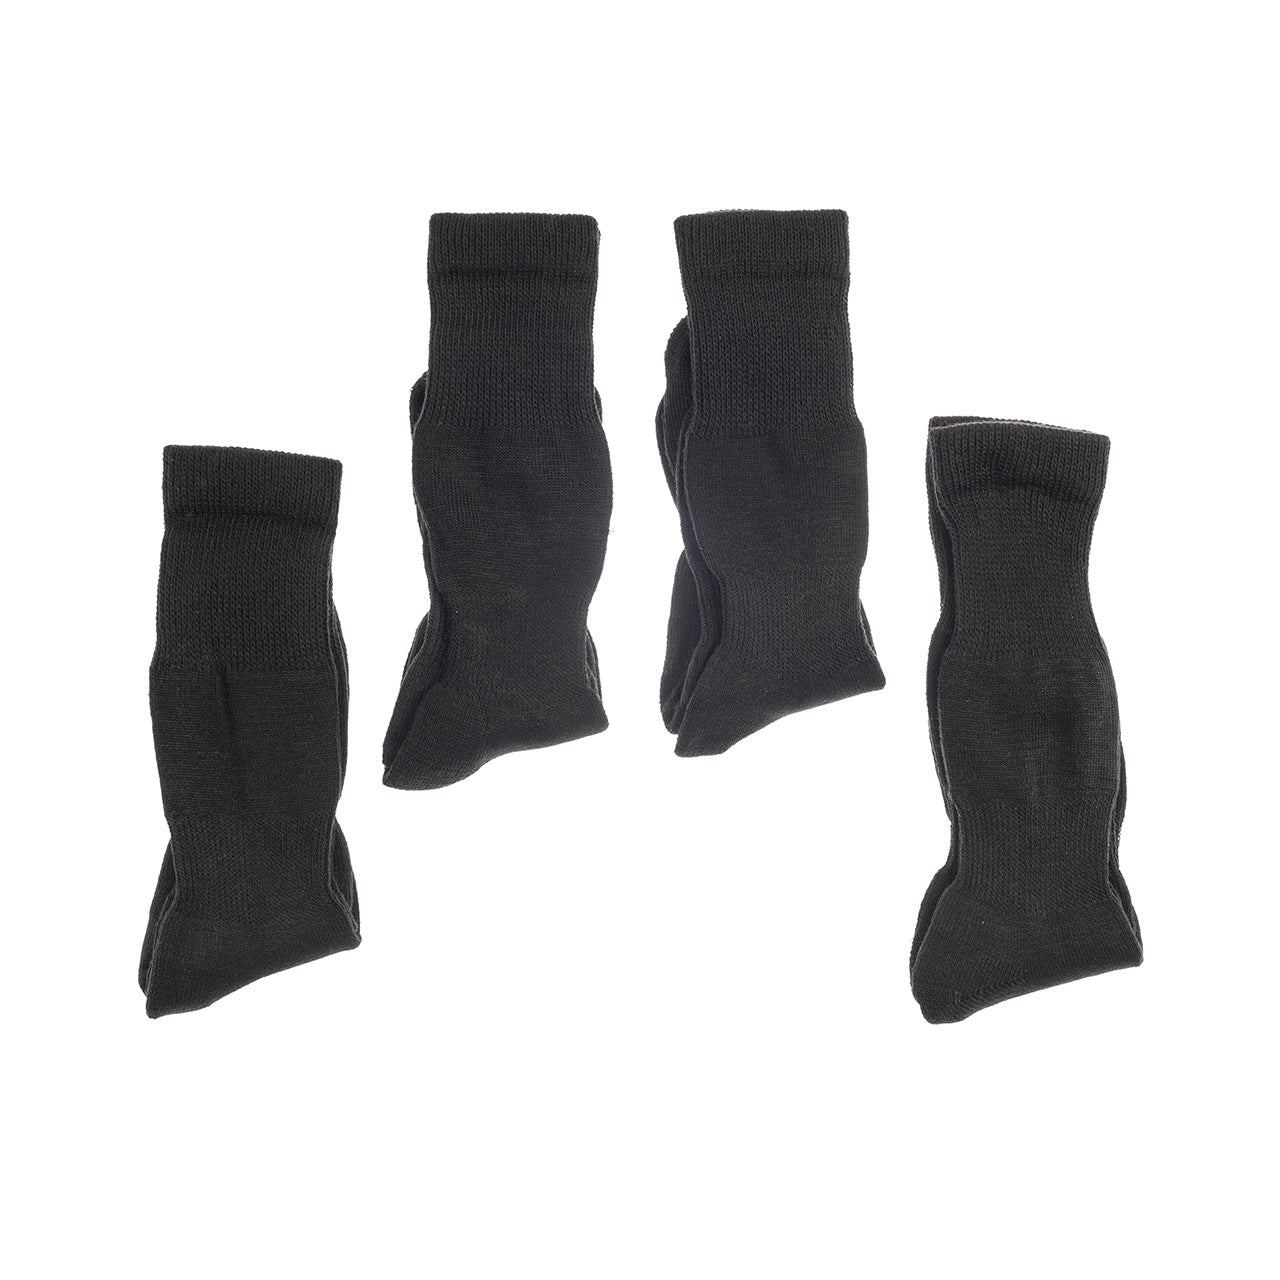 Ανδρικές Σετ 4 Ζευγάρια Ισοθερμικές Κάλτσες (6091) - Panda Clothing